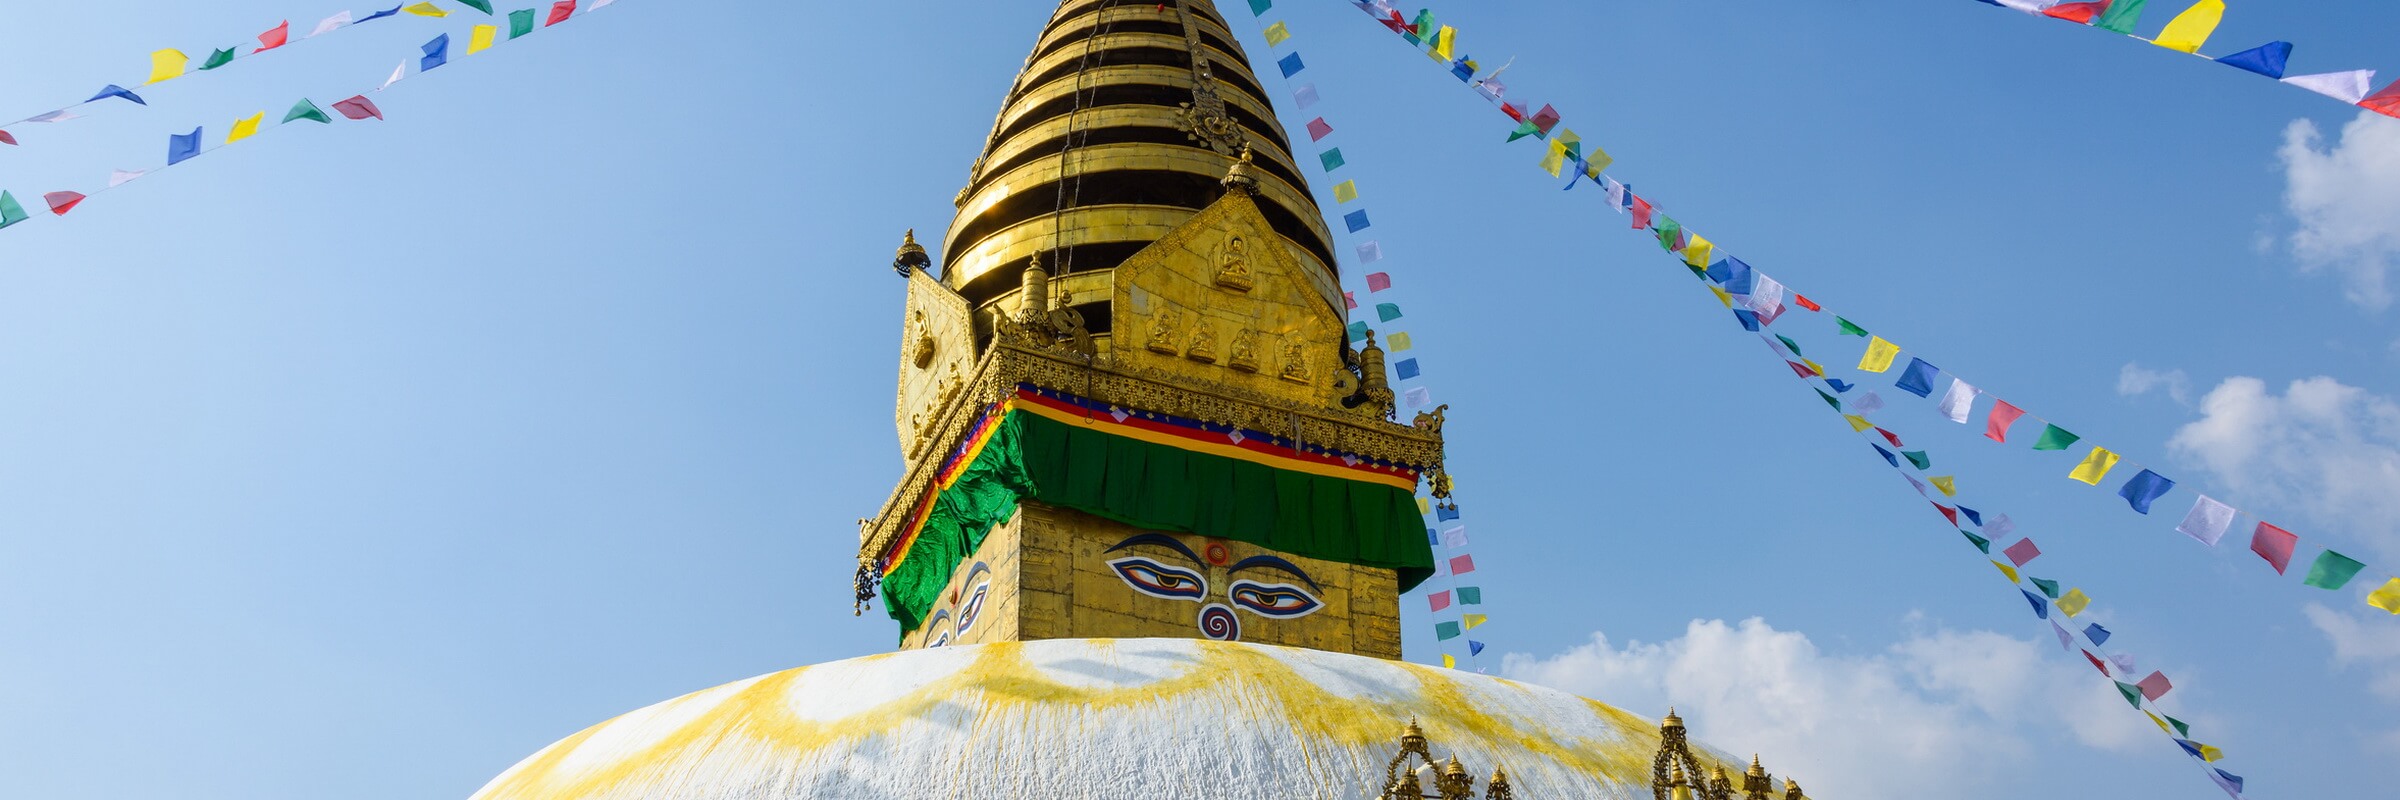 Swayambhunath stupa in Kathmandu, Nepal (before the 2015 earthquakes)